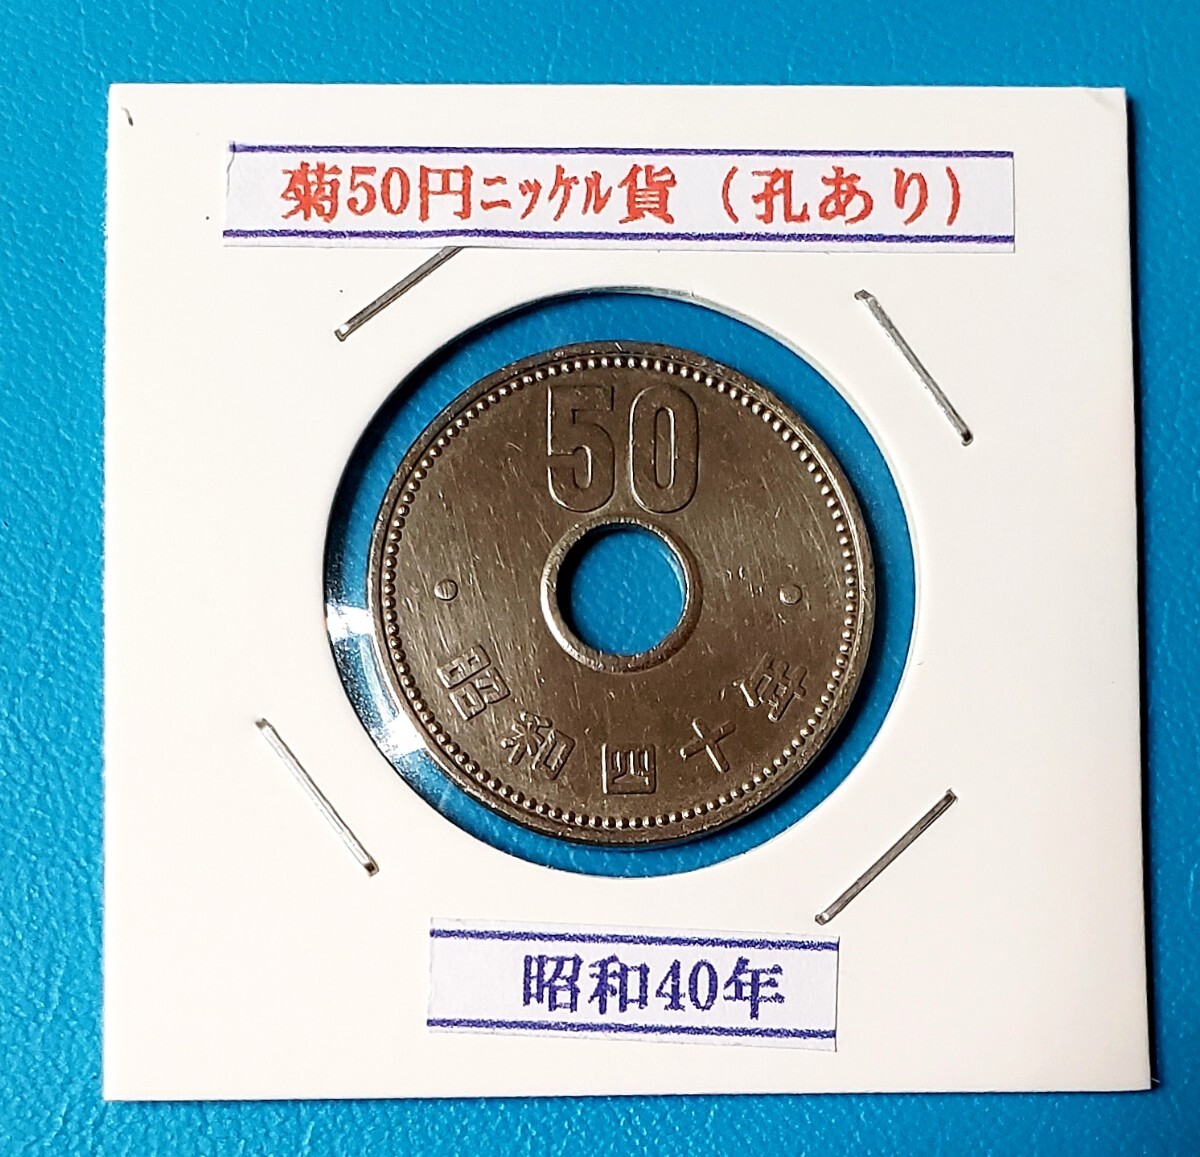 50円ニッケル貨 昭和40年         控え記号:Y20   の画像1